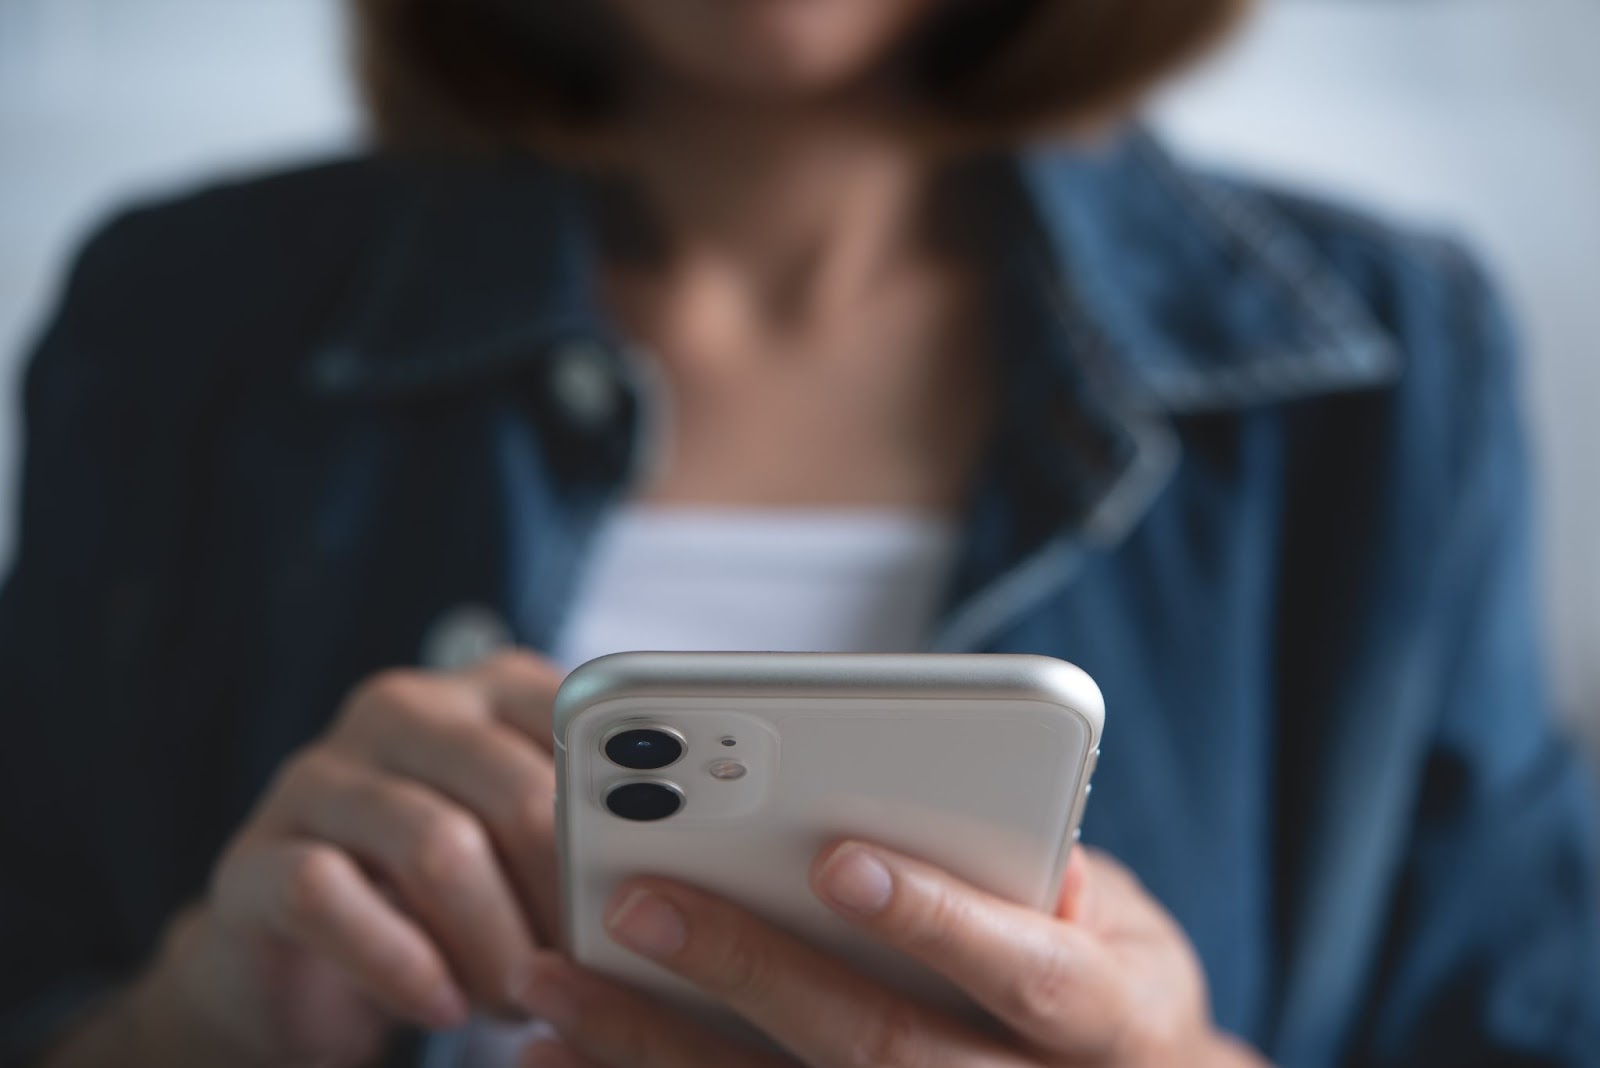 Imagem focada nas mãos de uma mulher segurando e mexendo em seu celular de cor prata. Ao fundo, é possível perceber a imagem do torso desfocada.